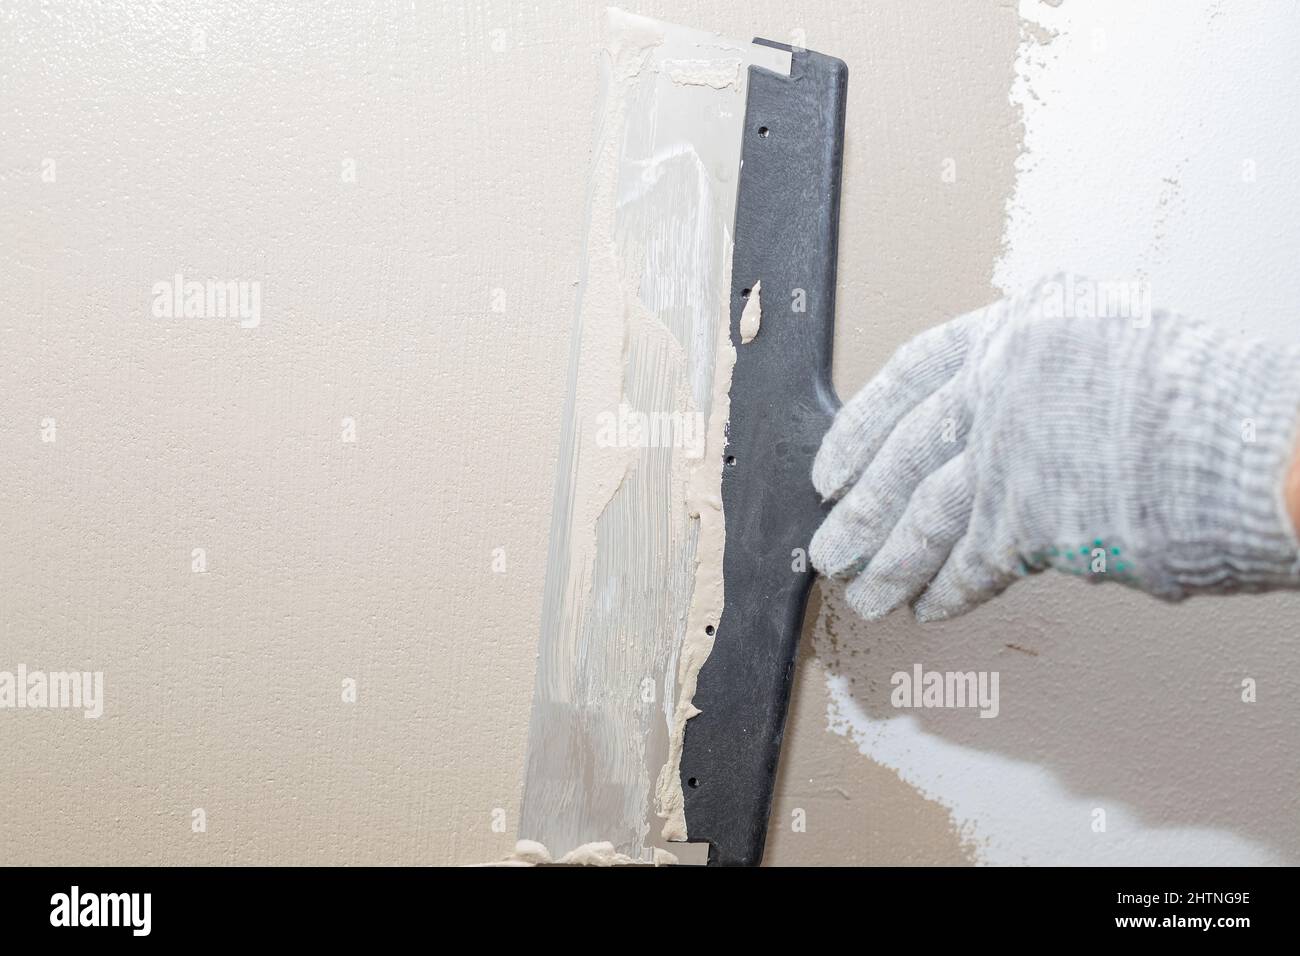 Mann verputzt Wand mit Kitt-Messer, Vorbereitung für die Malerei.Hände des  Arbeiters mit Wand verputzen Werkzeuge Haus renovieren. Putzer renovieren  Wände Stockfotografie - Alamy